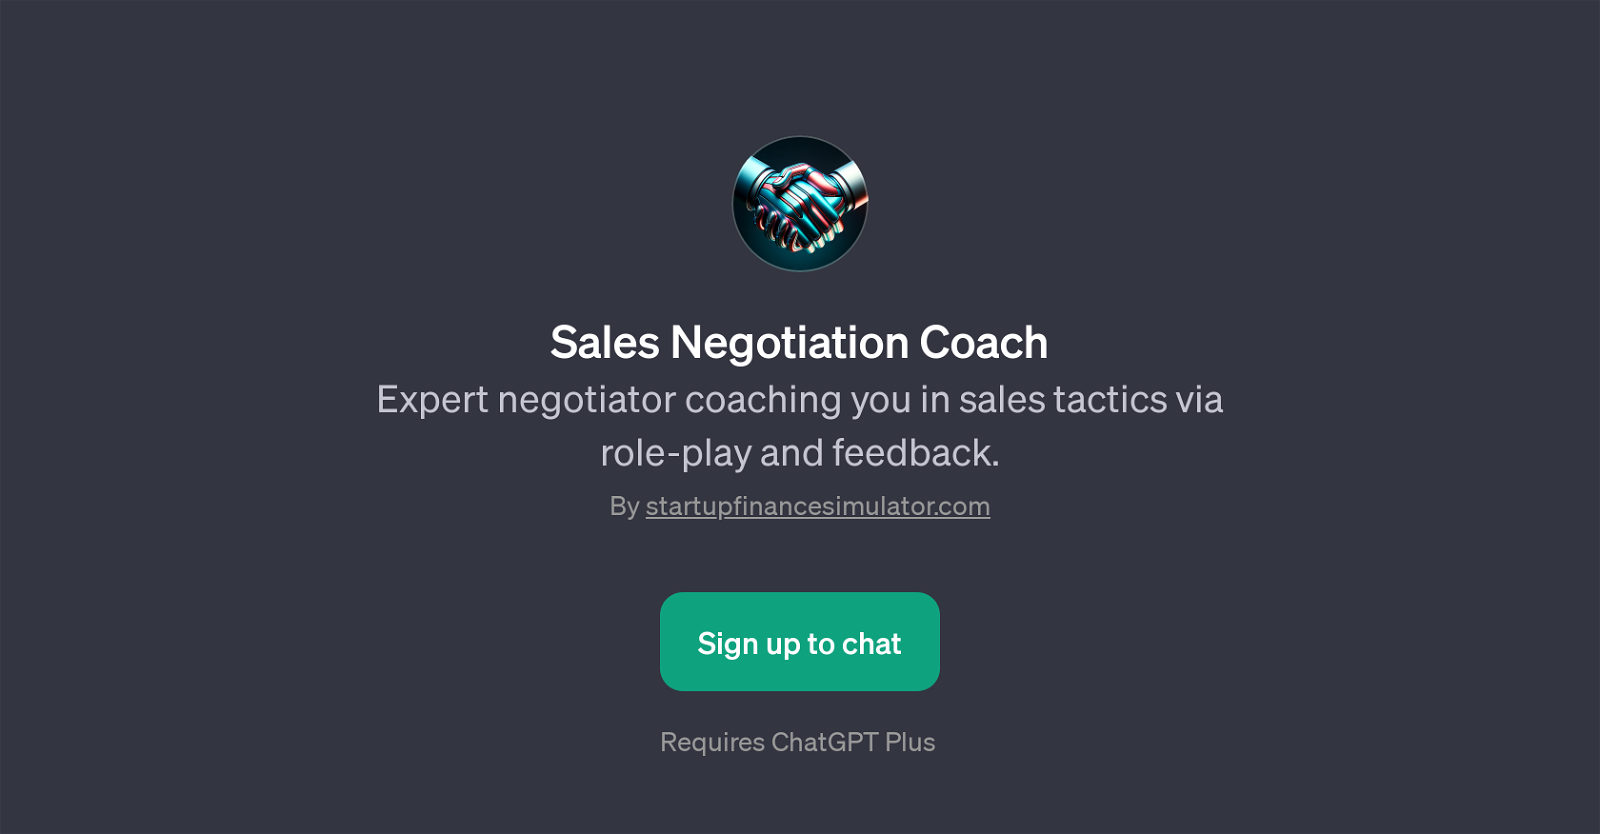 Sales Negotiation Coach website